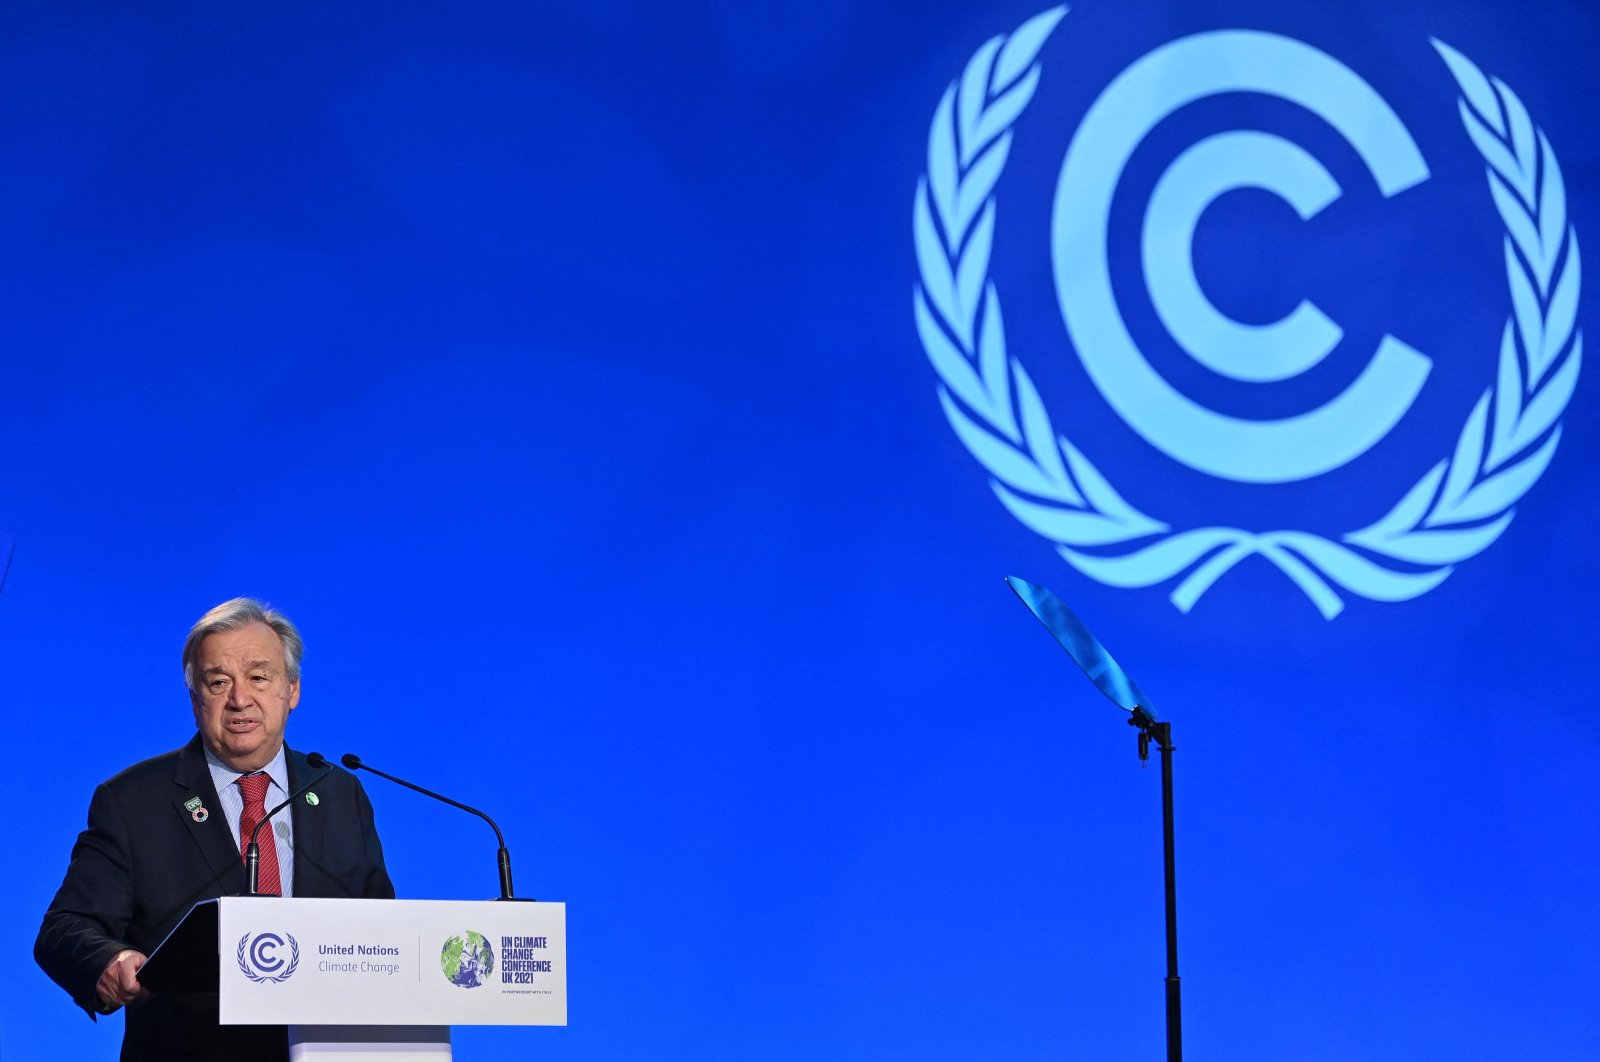 Larangan perjalanan karena omicron tidak adil, tidak efektif: Guterres PBB